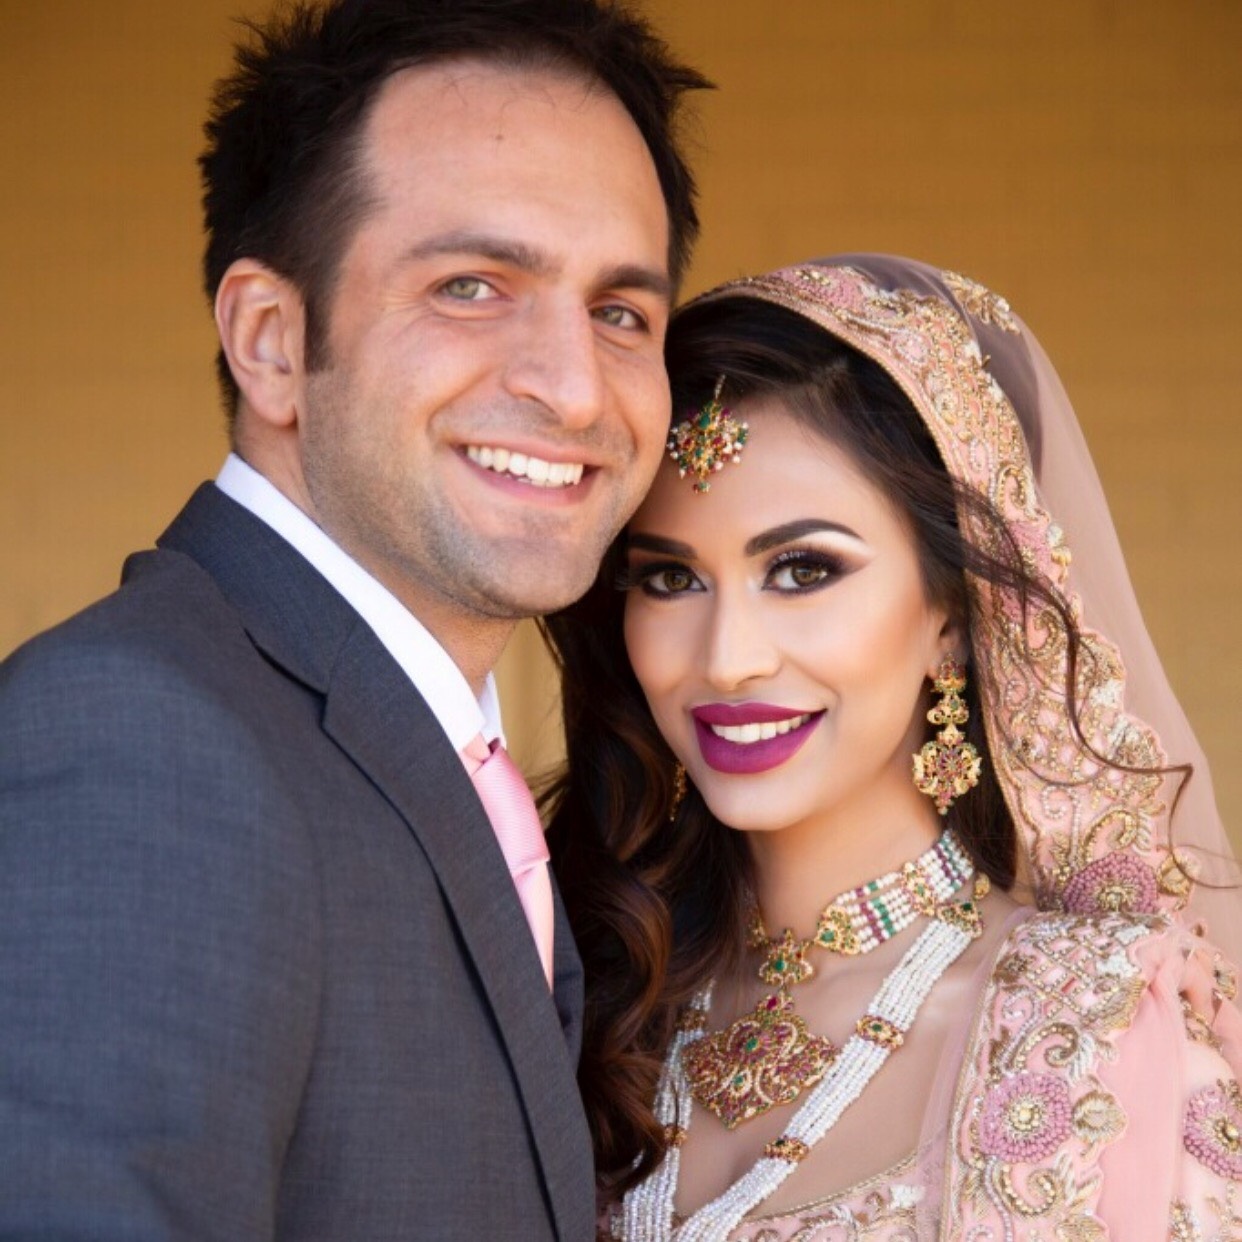 South Asian Bridal Makeup